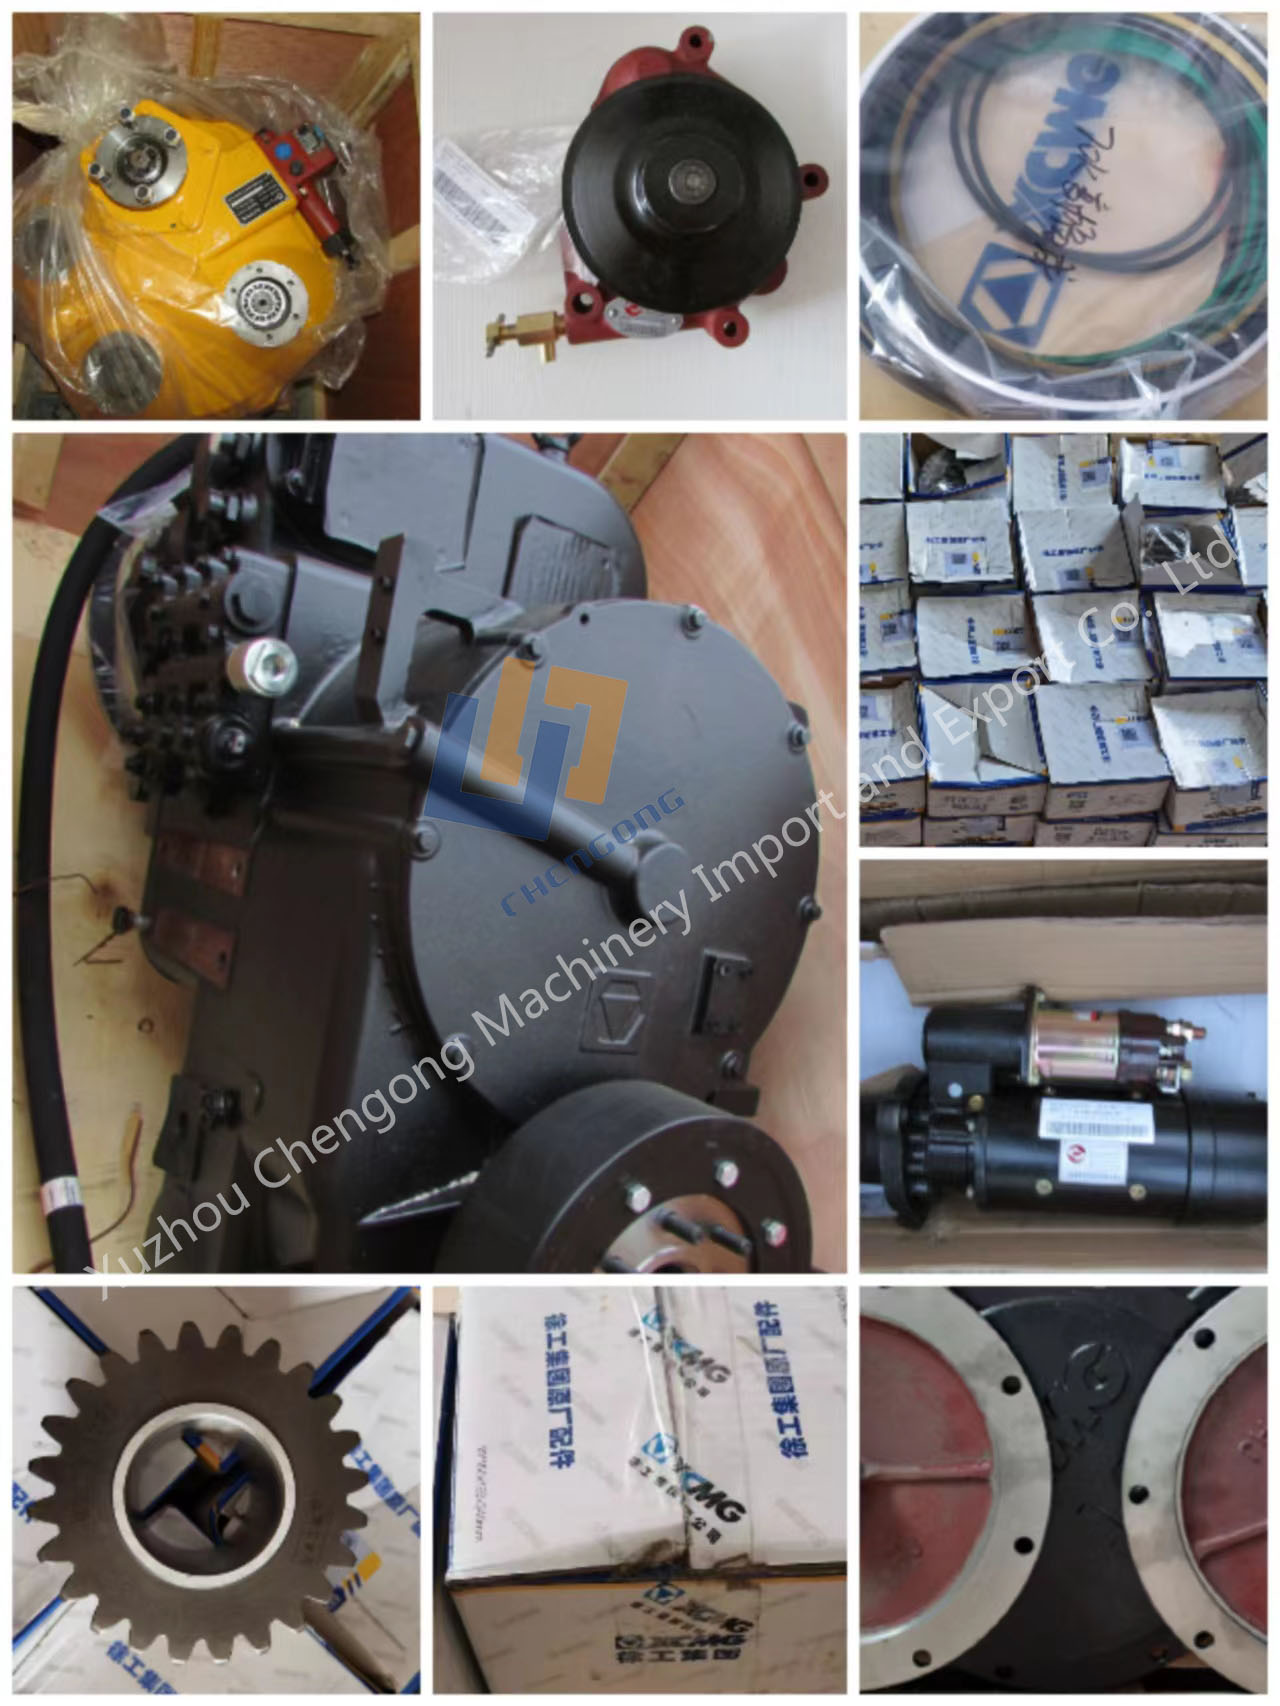 XCMG wheel loader ဆီစစ် 860141500 JX0810G-J0300G အပိုပစ္စည်း (၆)မျိုး၊